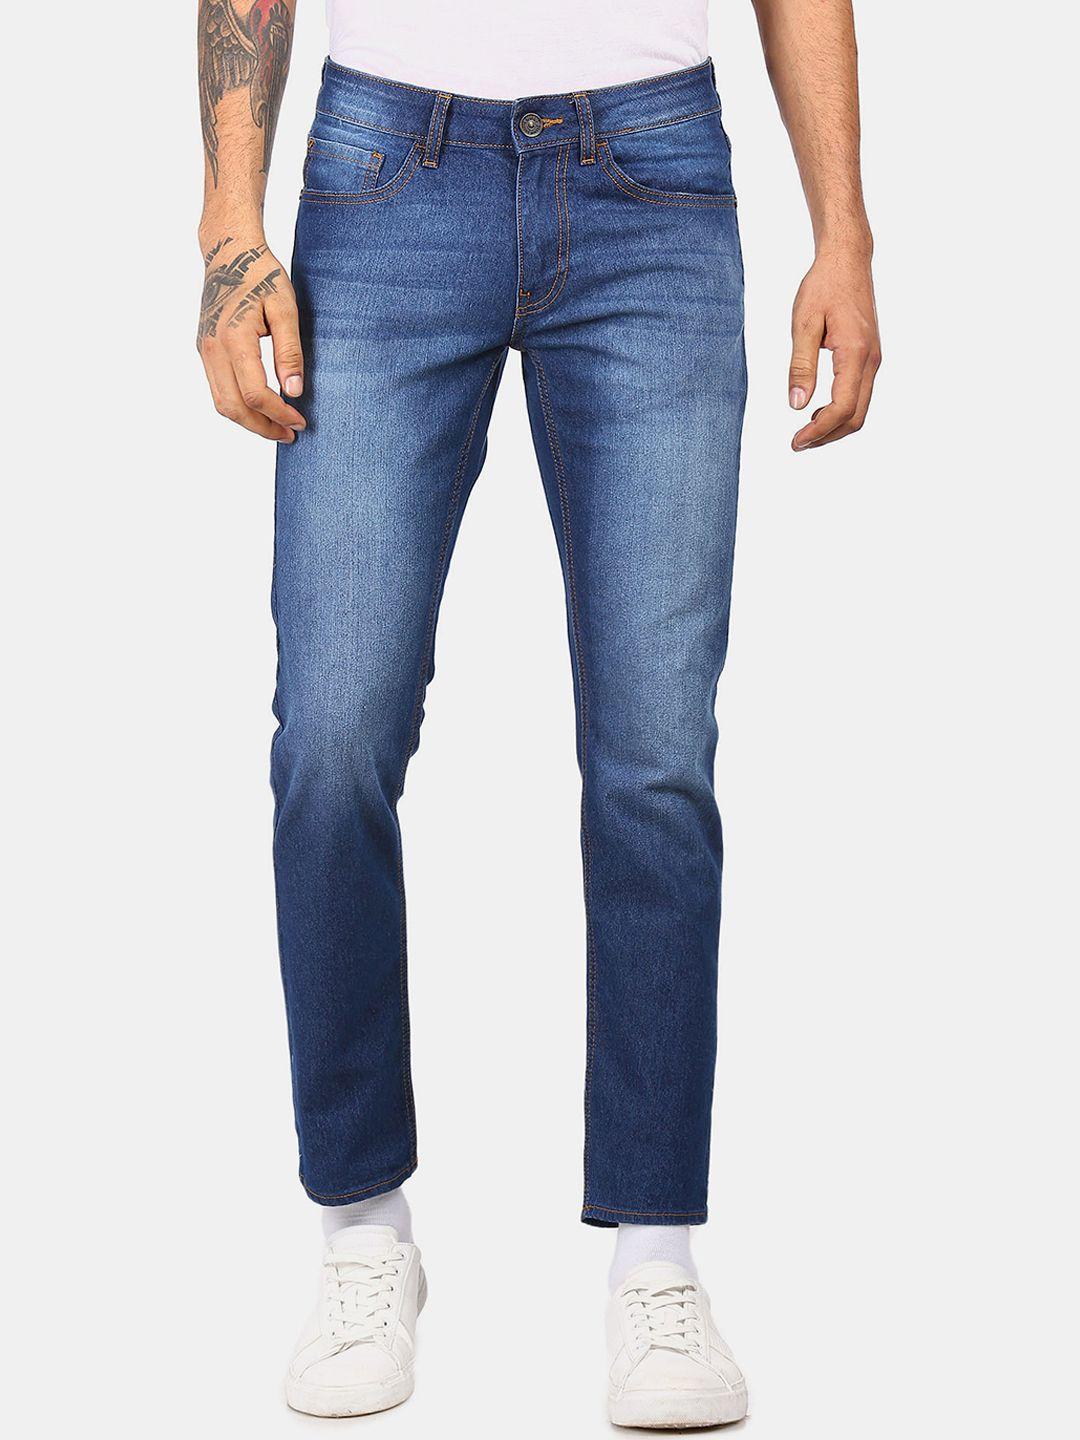 colt-men-blue-cotton-light-fade-jeans